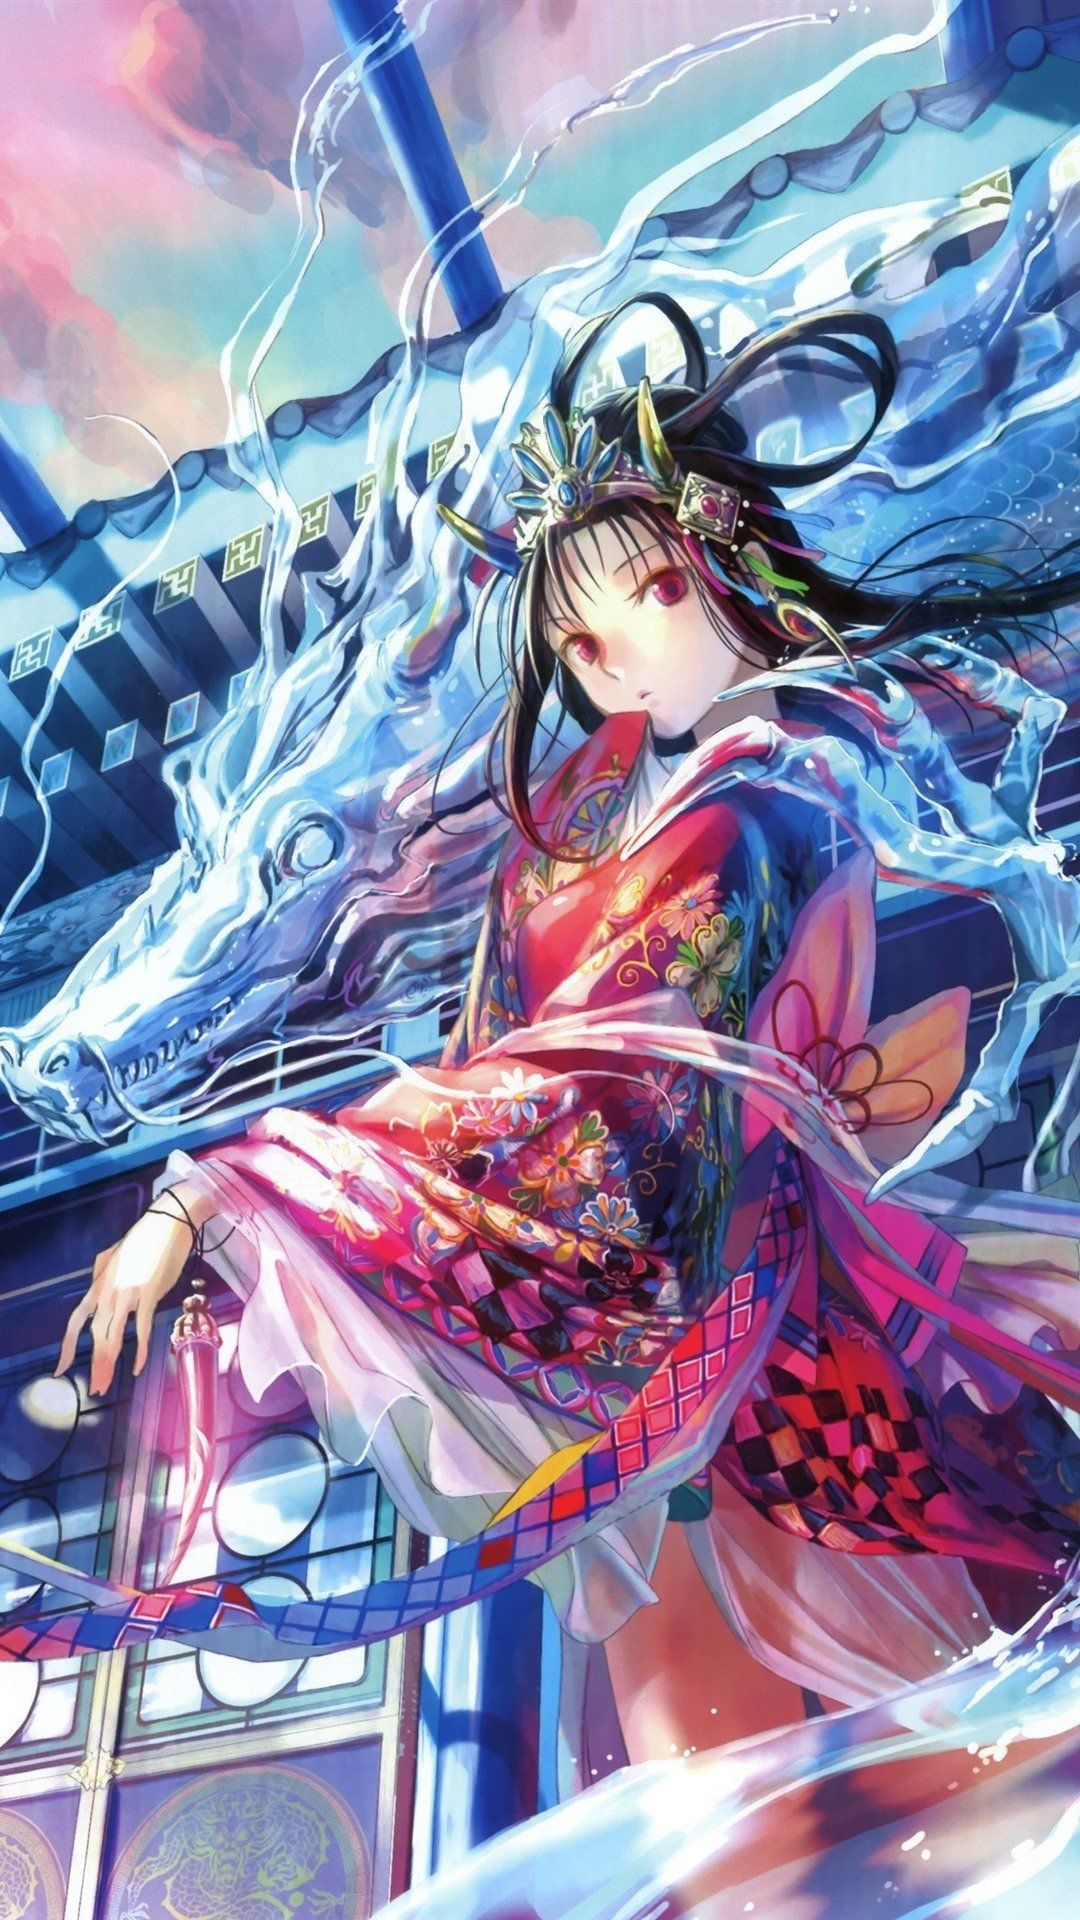 Anime Girl And Dragon Wallpapers